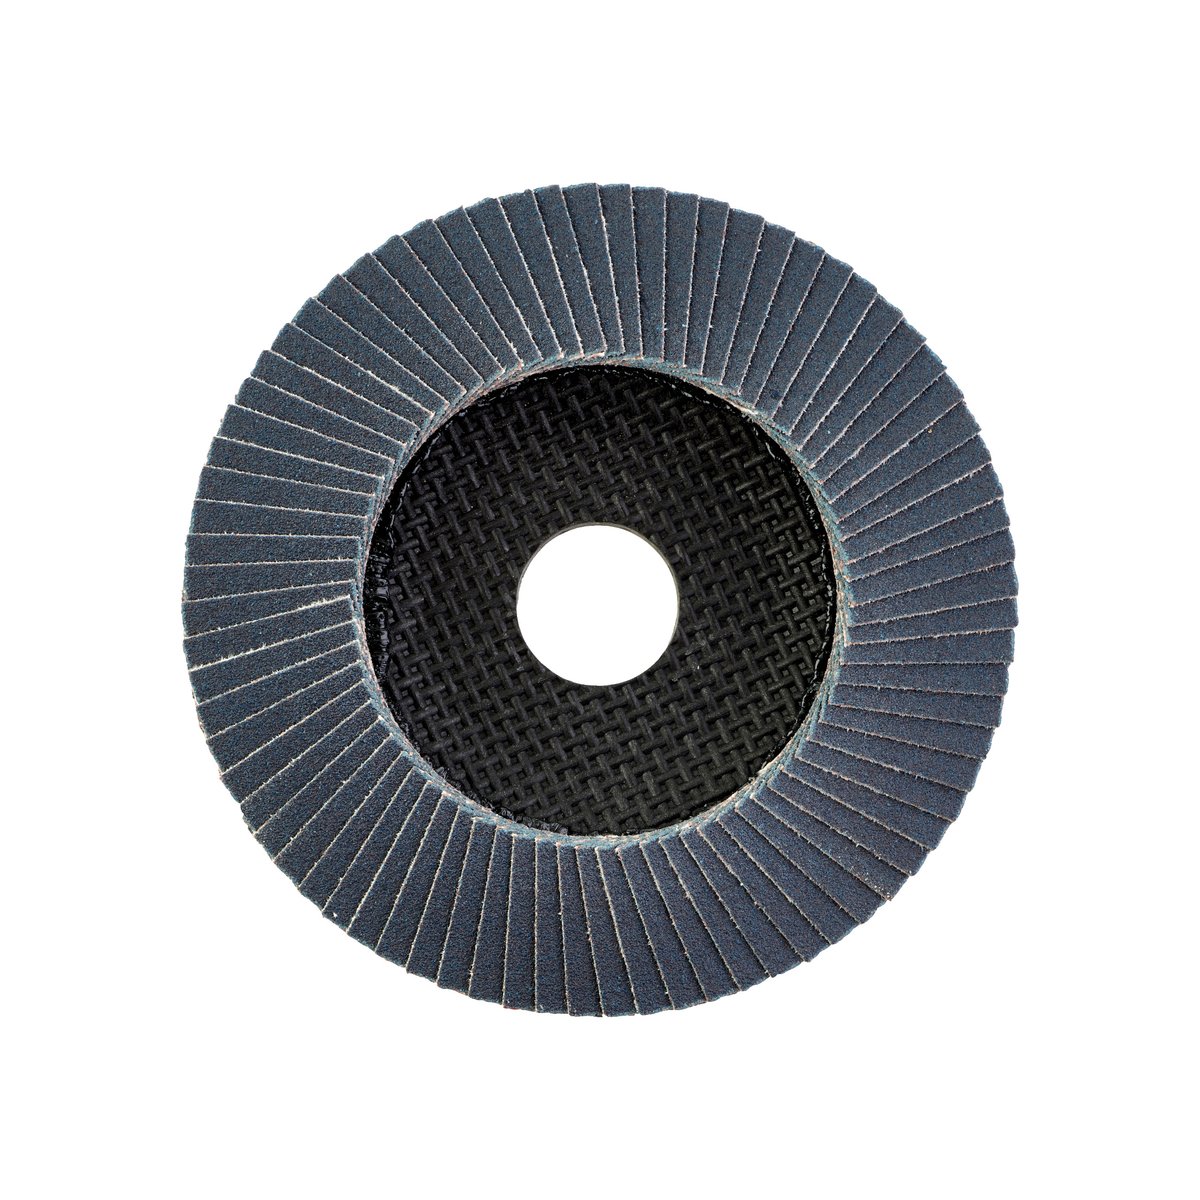 Лепестковый диск SL50/125G40 Zirconium 125 мм / Зерно 40 